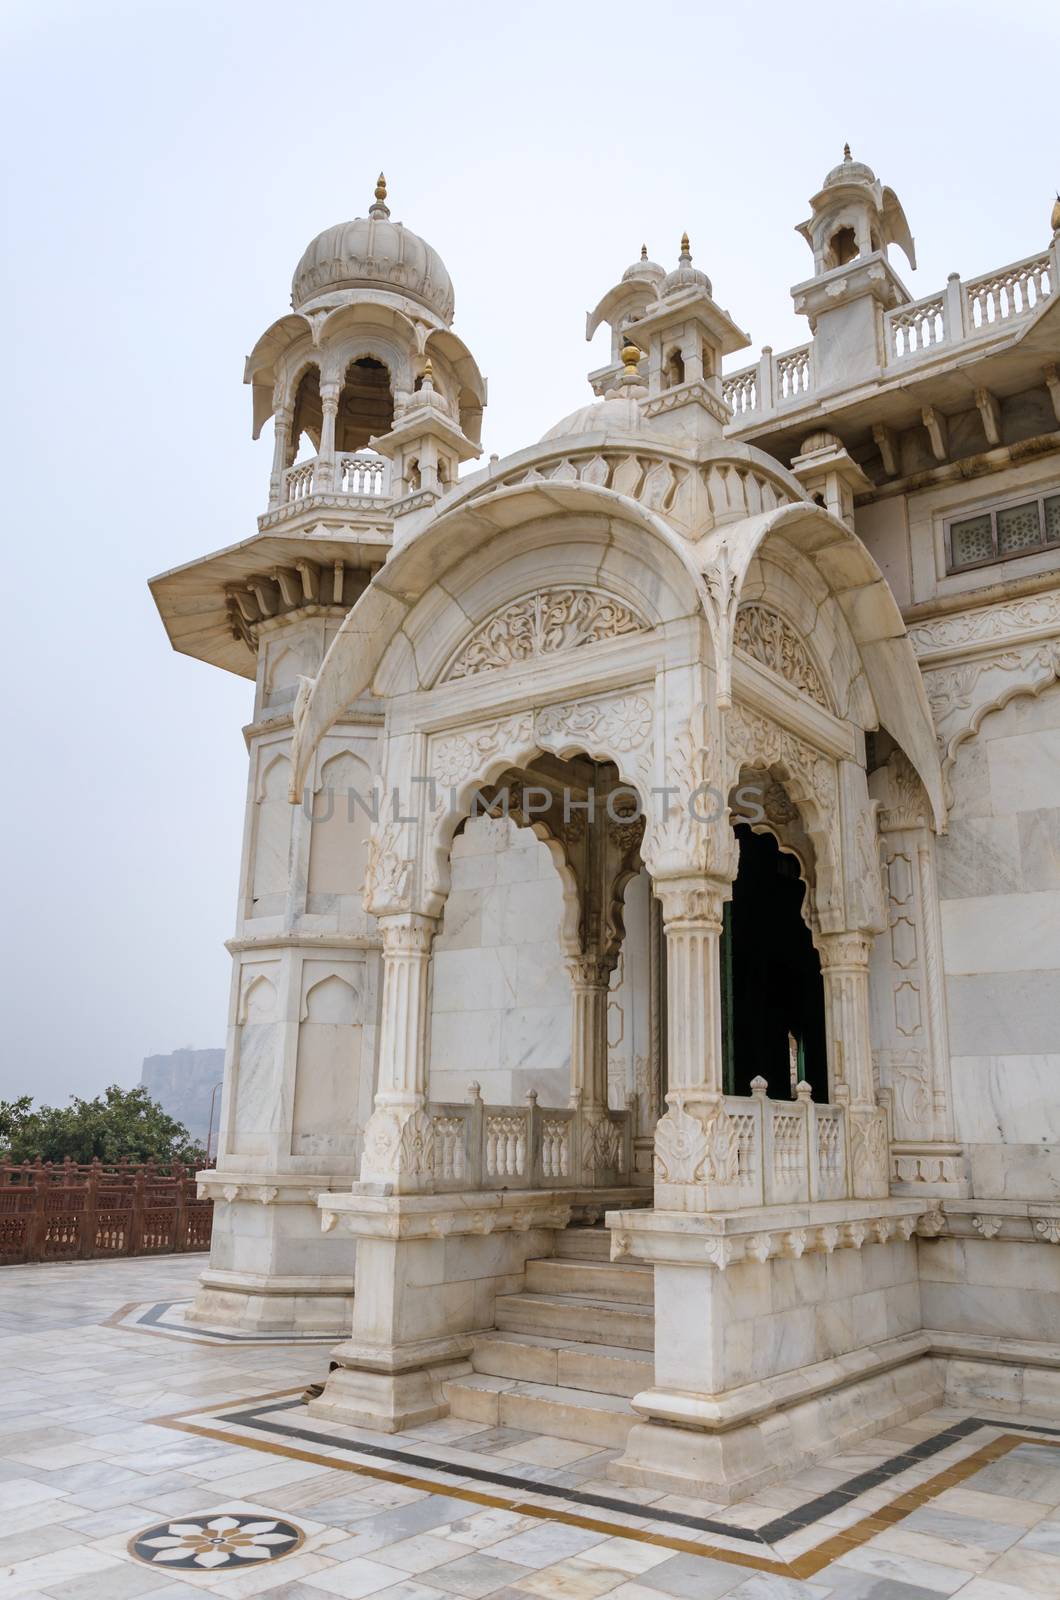 Jaswant Thada memorial, Jodhpur, Rajasthan, India. 